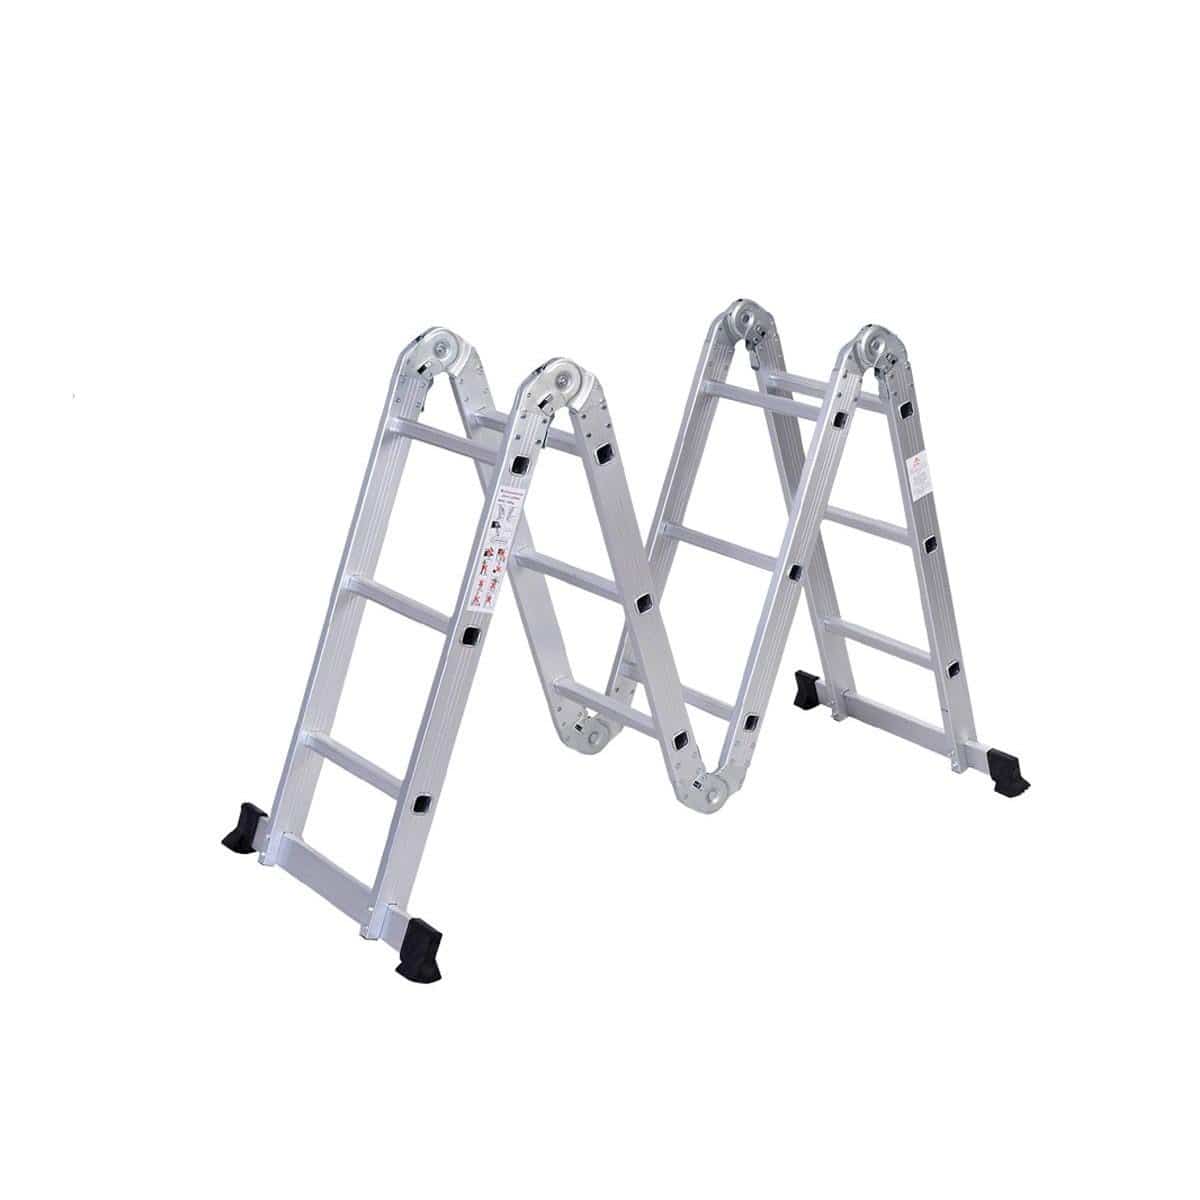 SUMO KING Heavy Duty Multi Purpose Ladder Flat Foot (16 STEPS)